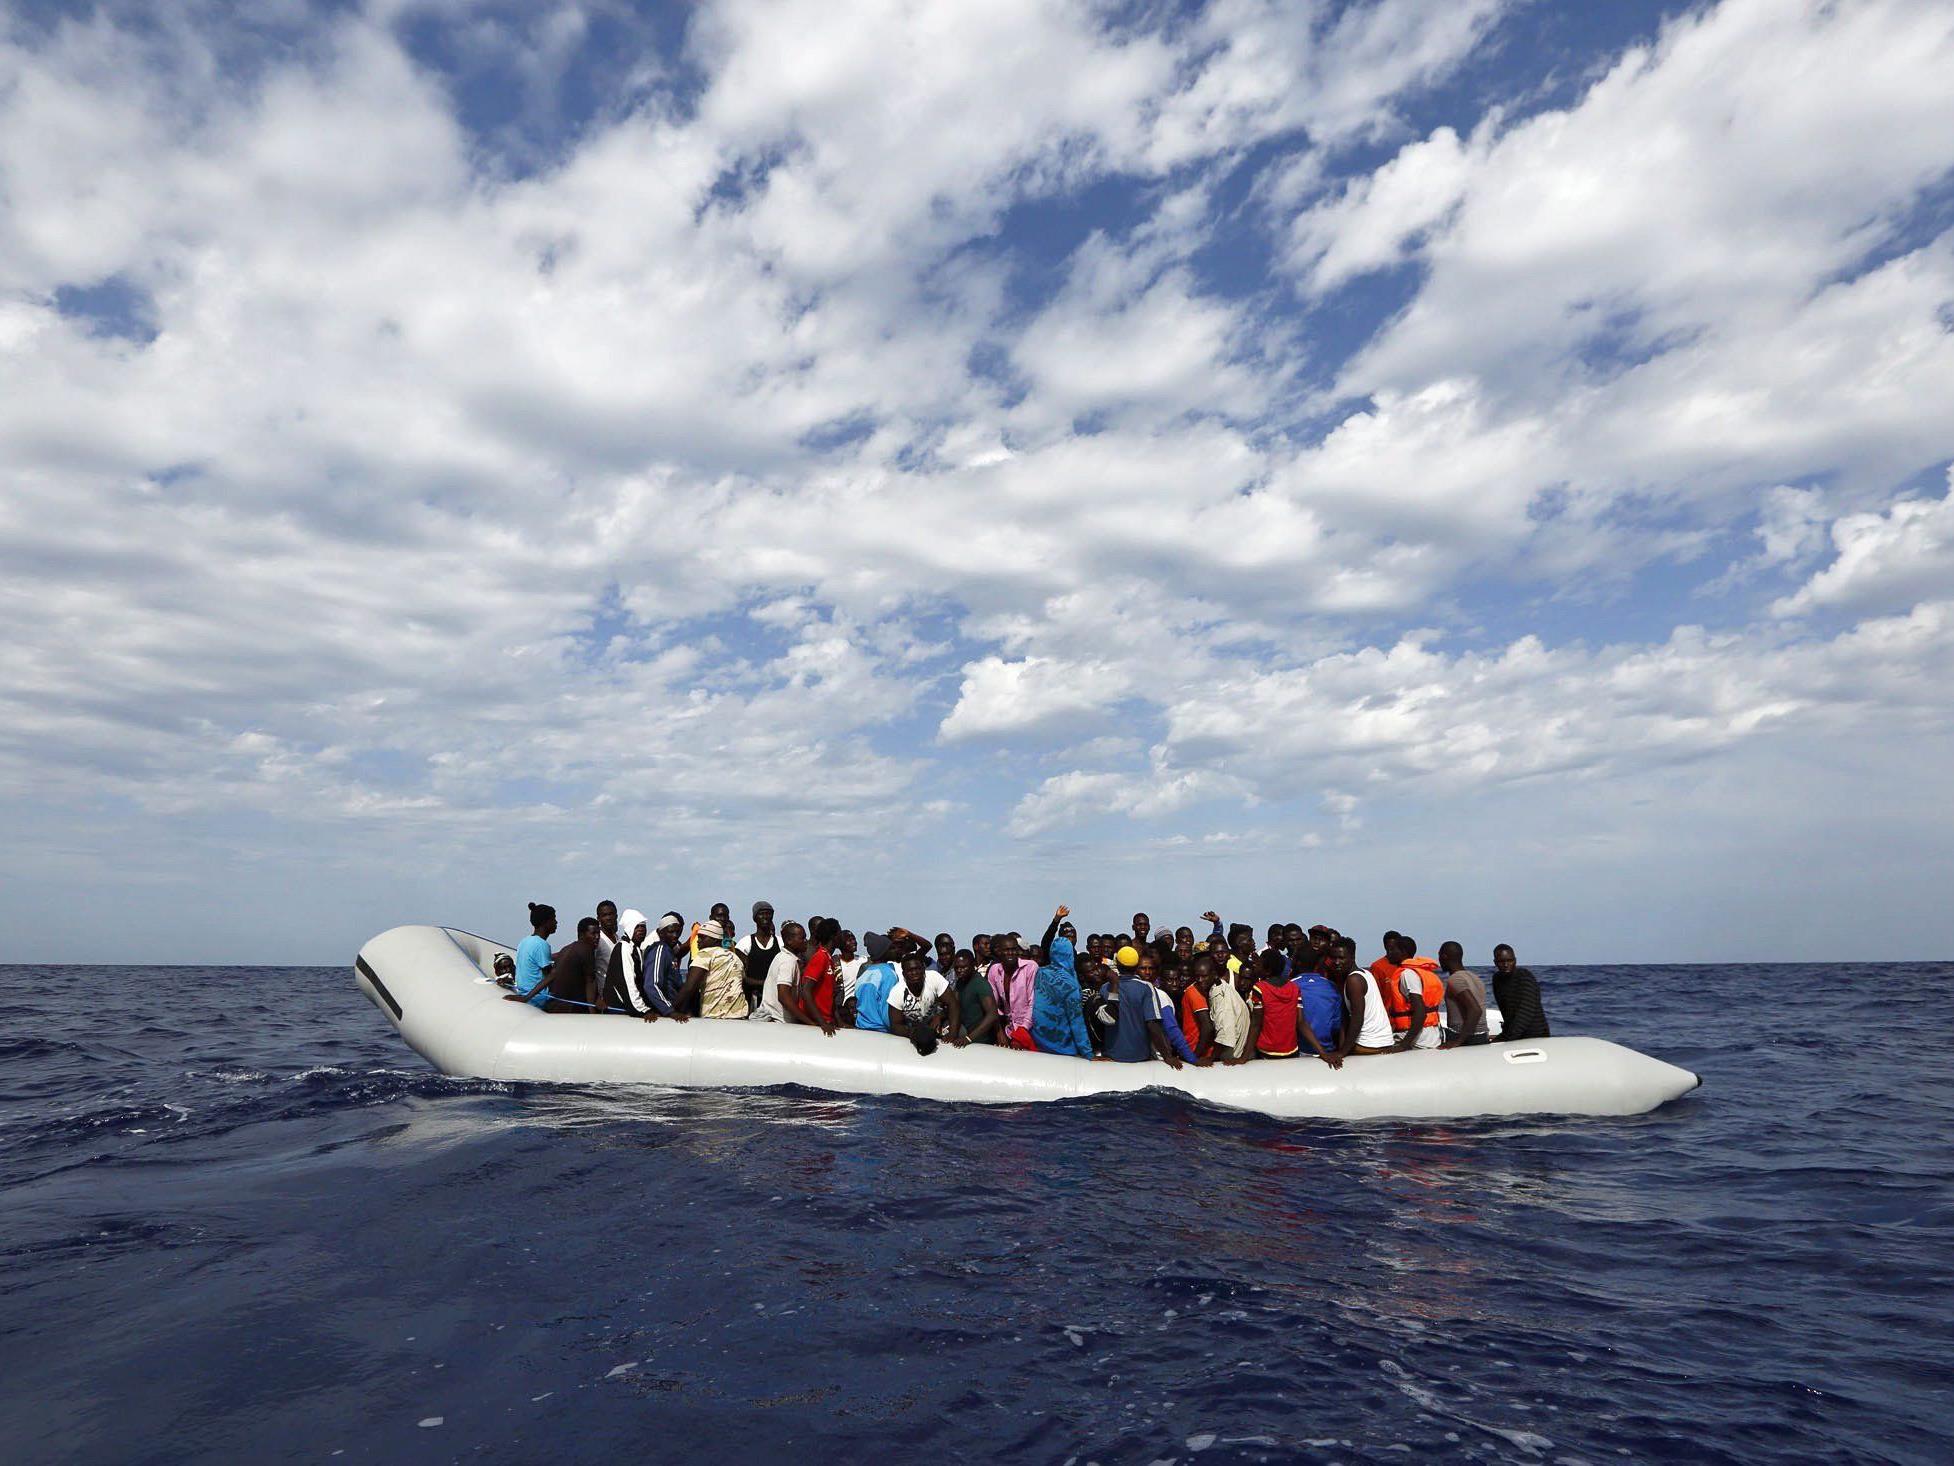 Die EU will die Schlepperbanden im Mittelmeer bekämpfen, um dem Flüchtlingsstrom Herr zu werden.